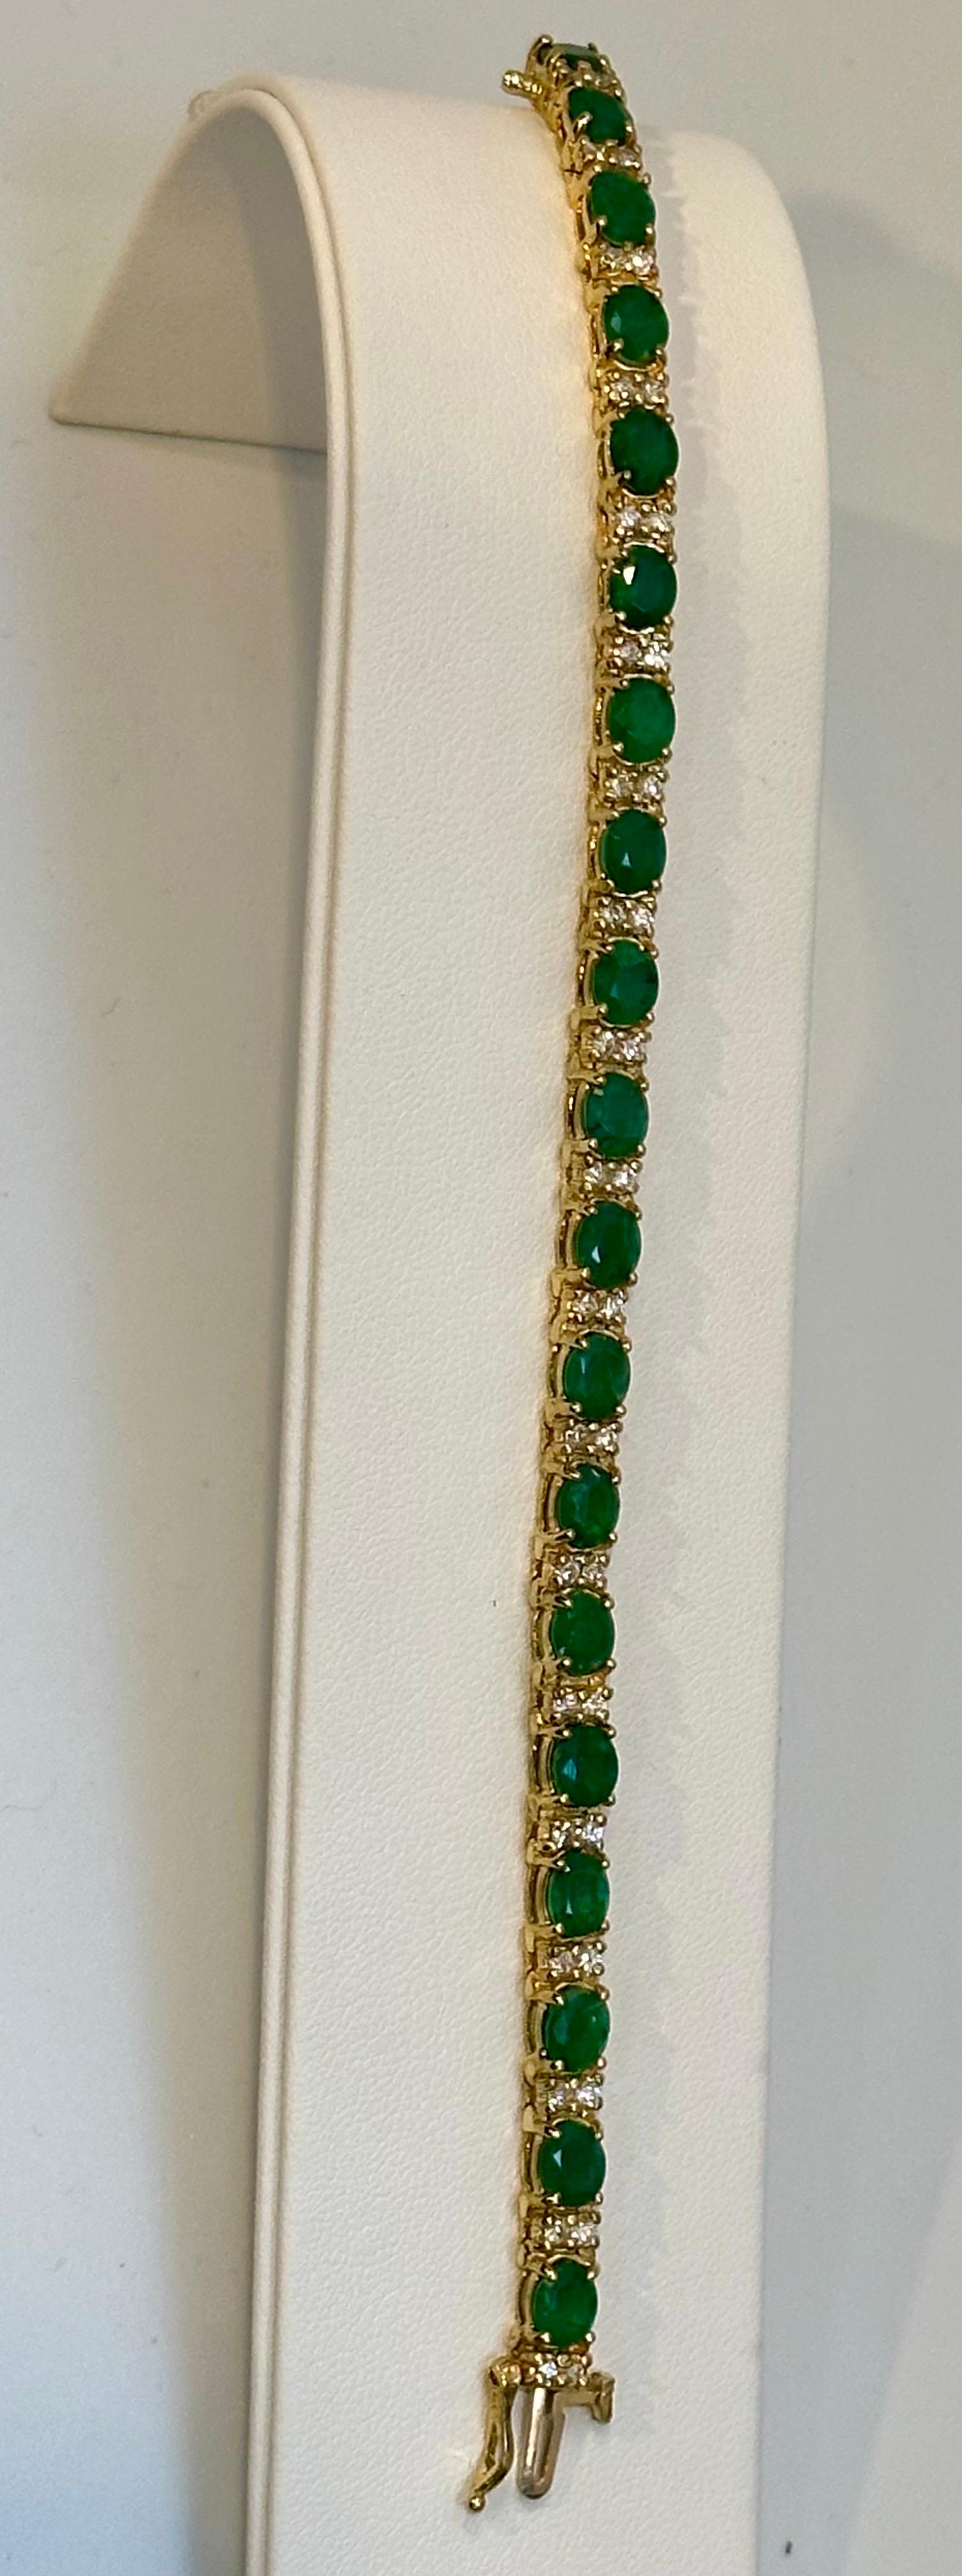 13 Carat Natural Emerald & Diamond Cocktail Tennis Bracelet 14 Karat Yellow Gold 9